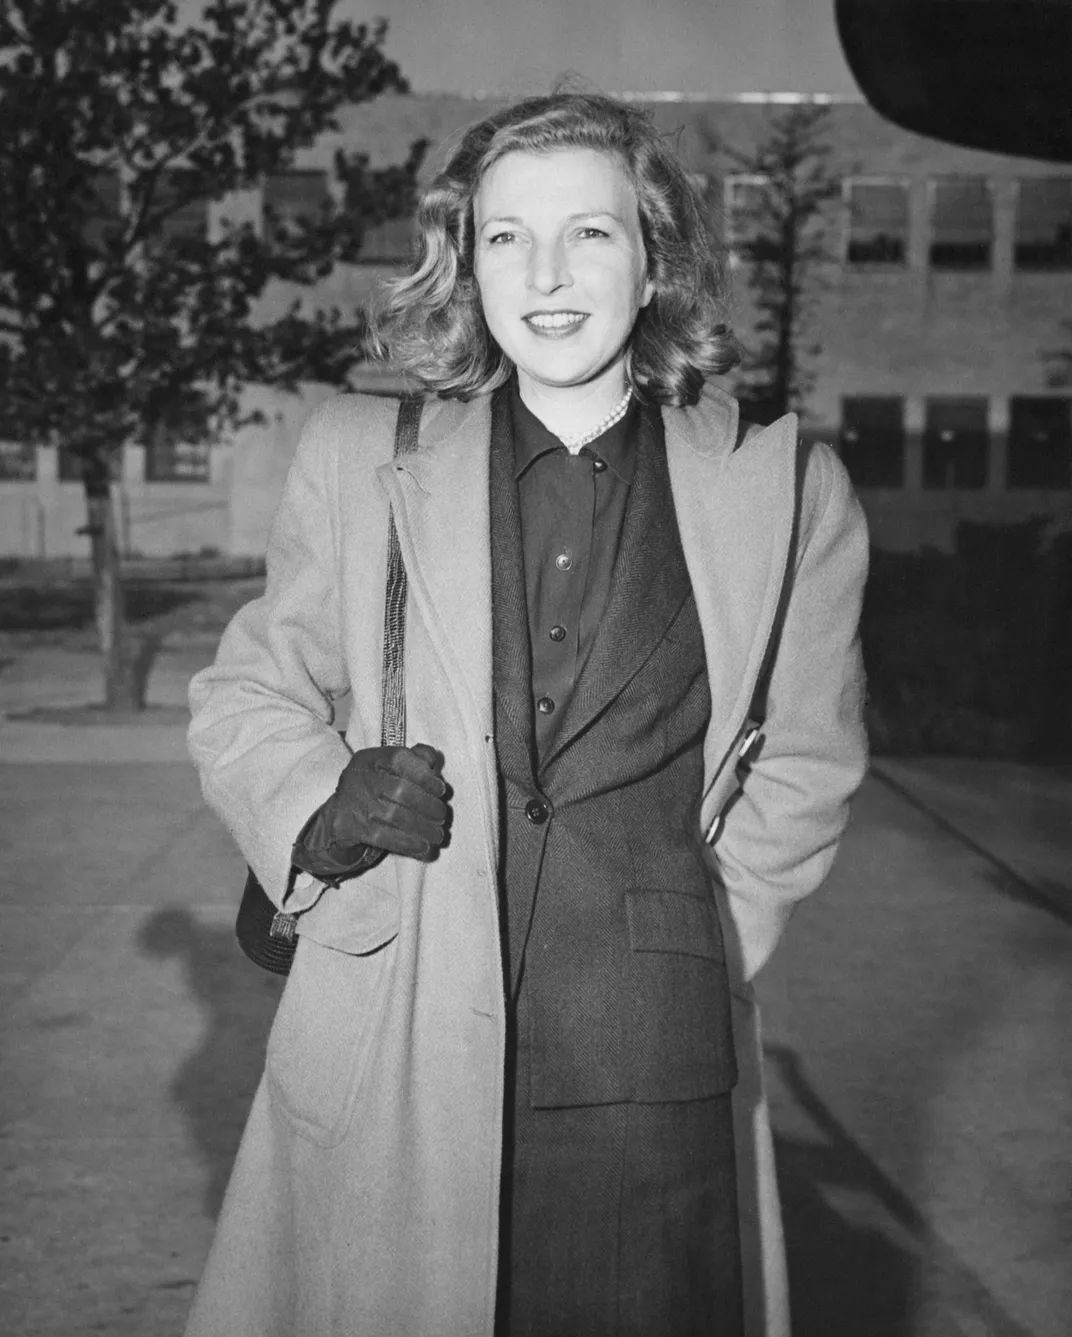 A 1946 photo of Gellhorn